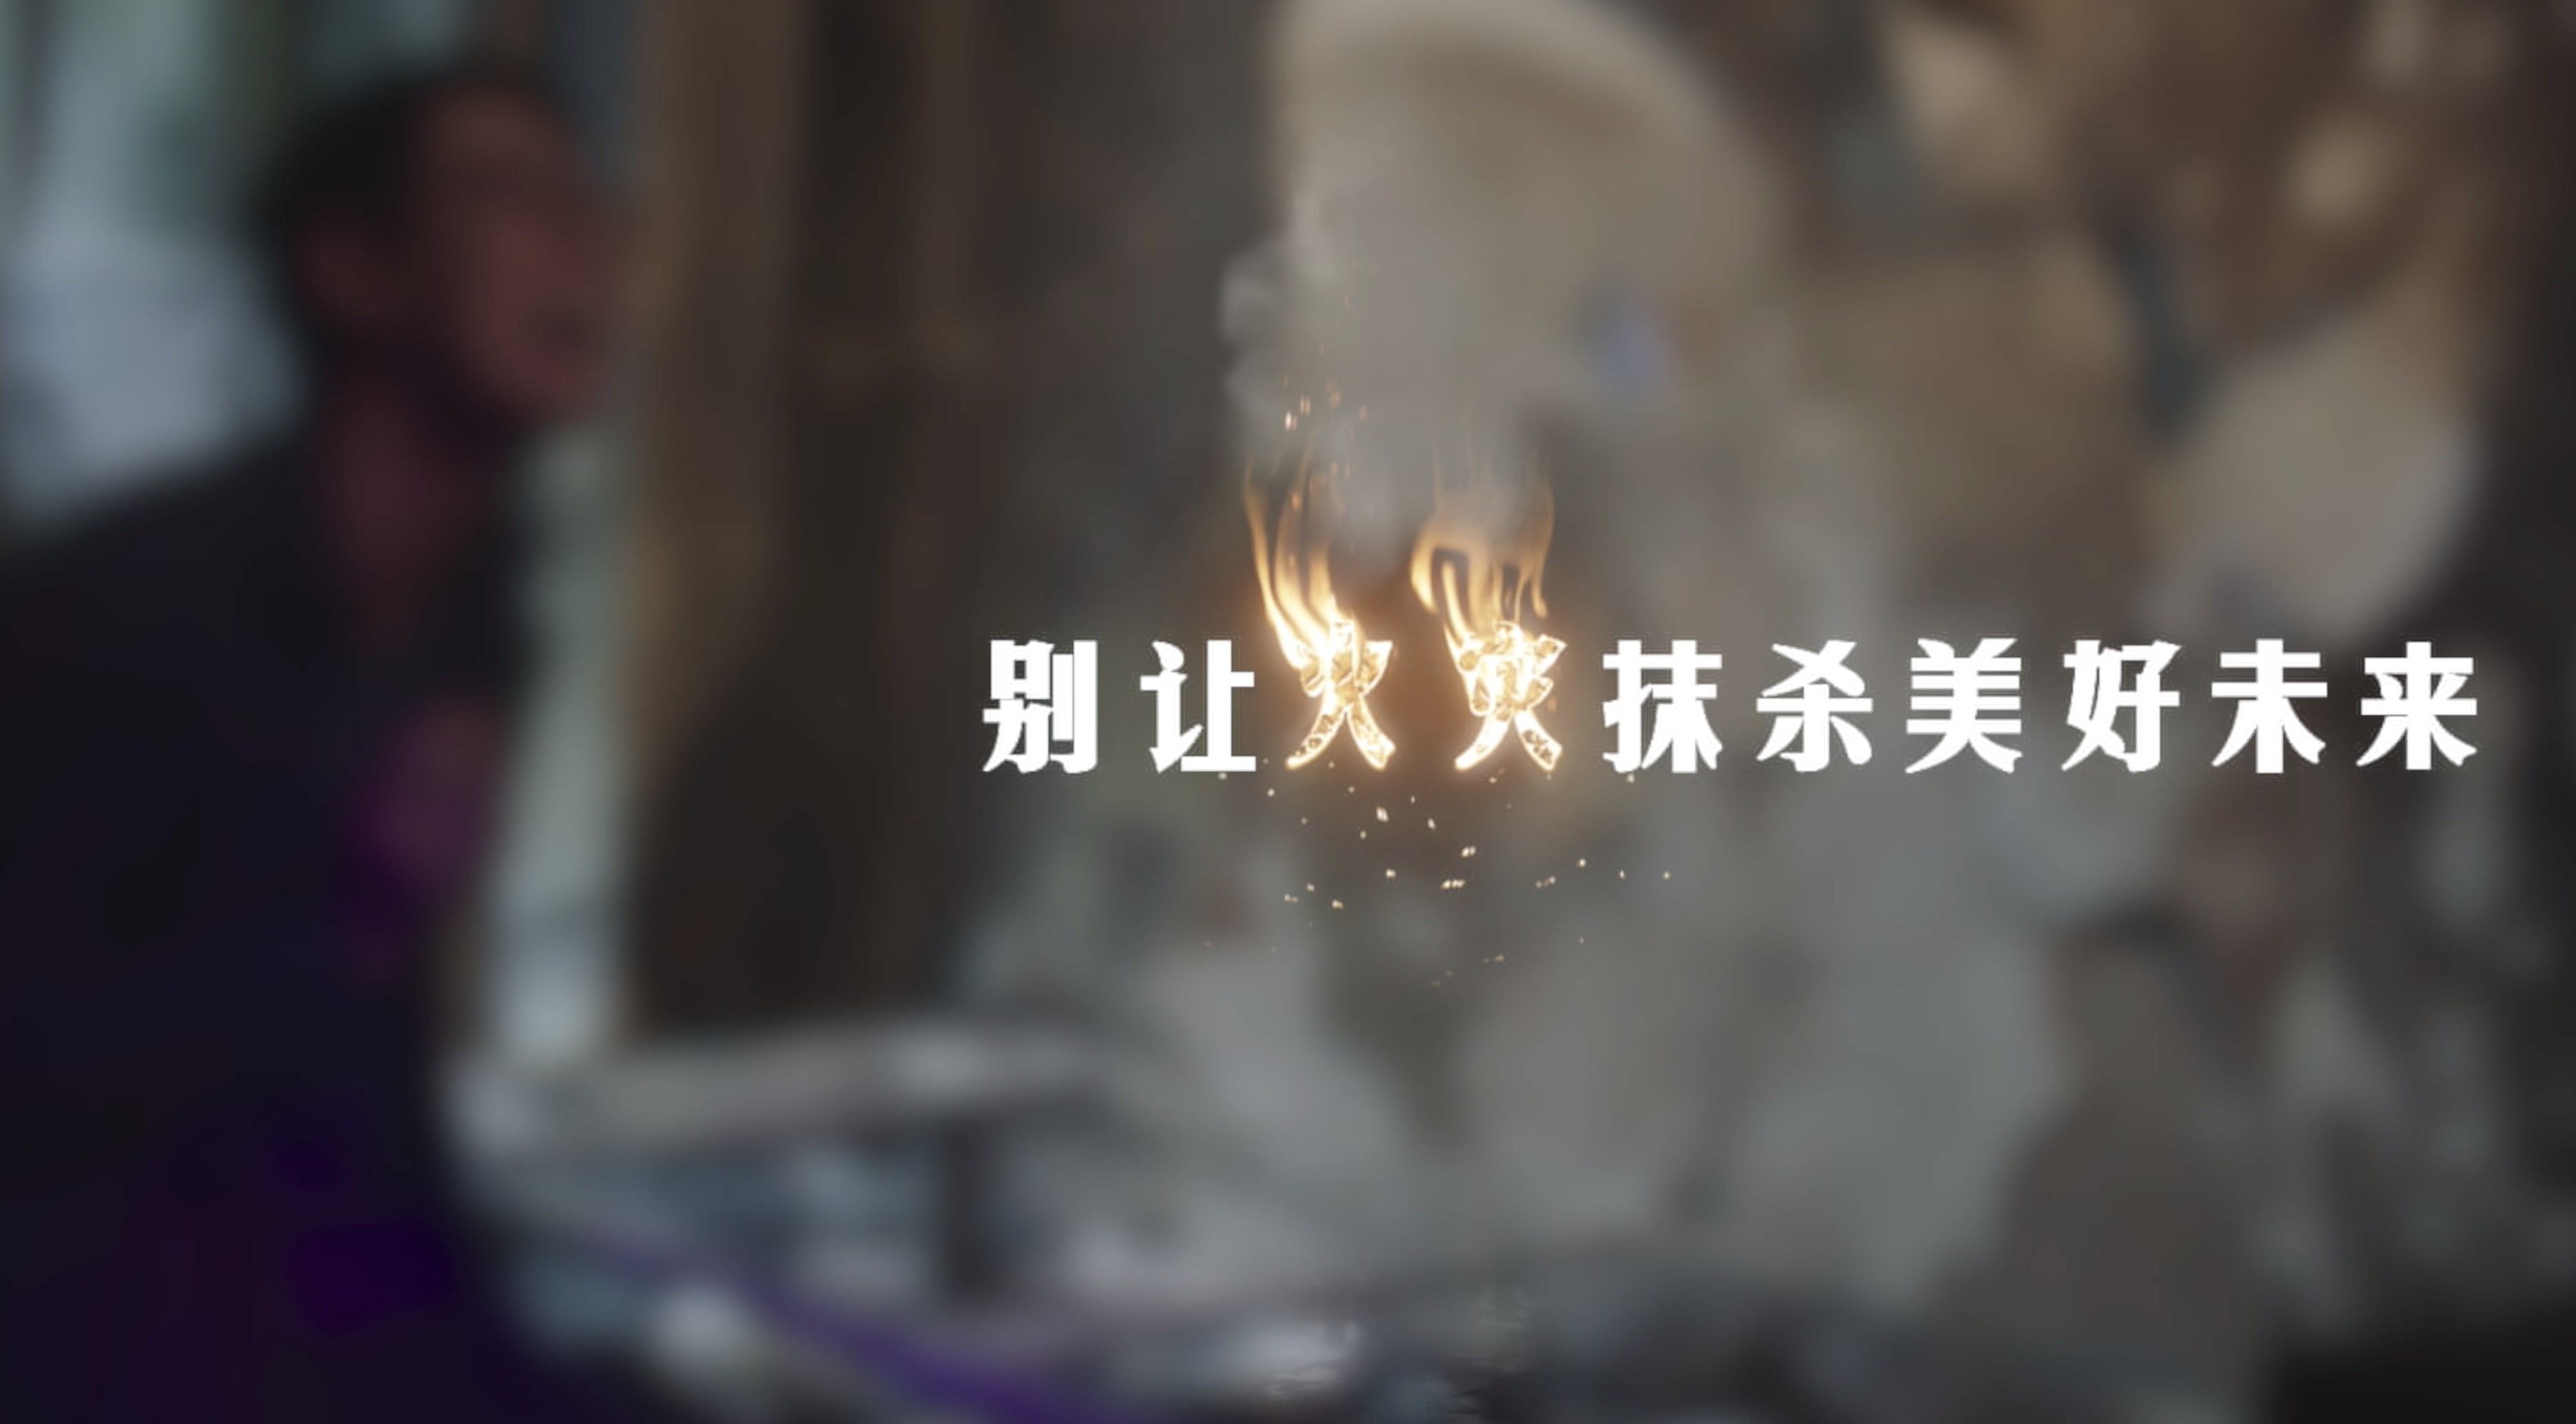 陕西消防总队宣传微电影《别让火灾抹杀美好未来》 